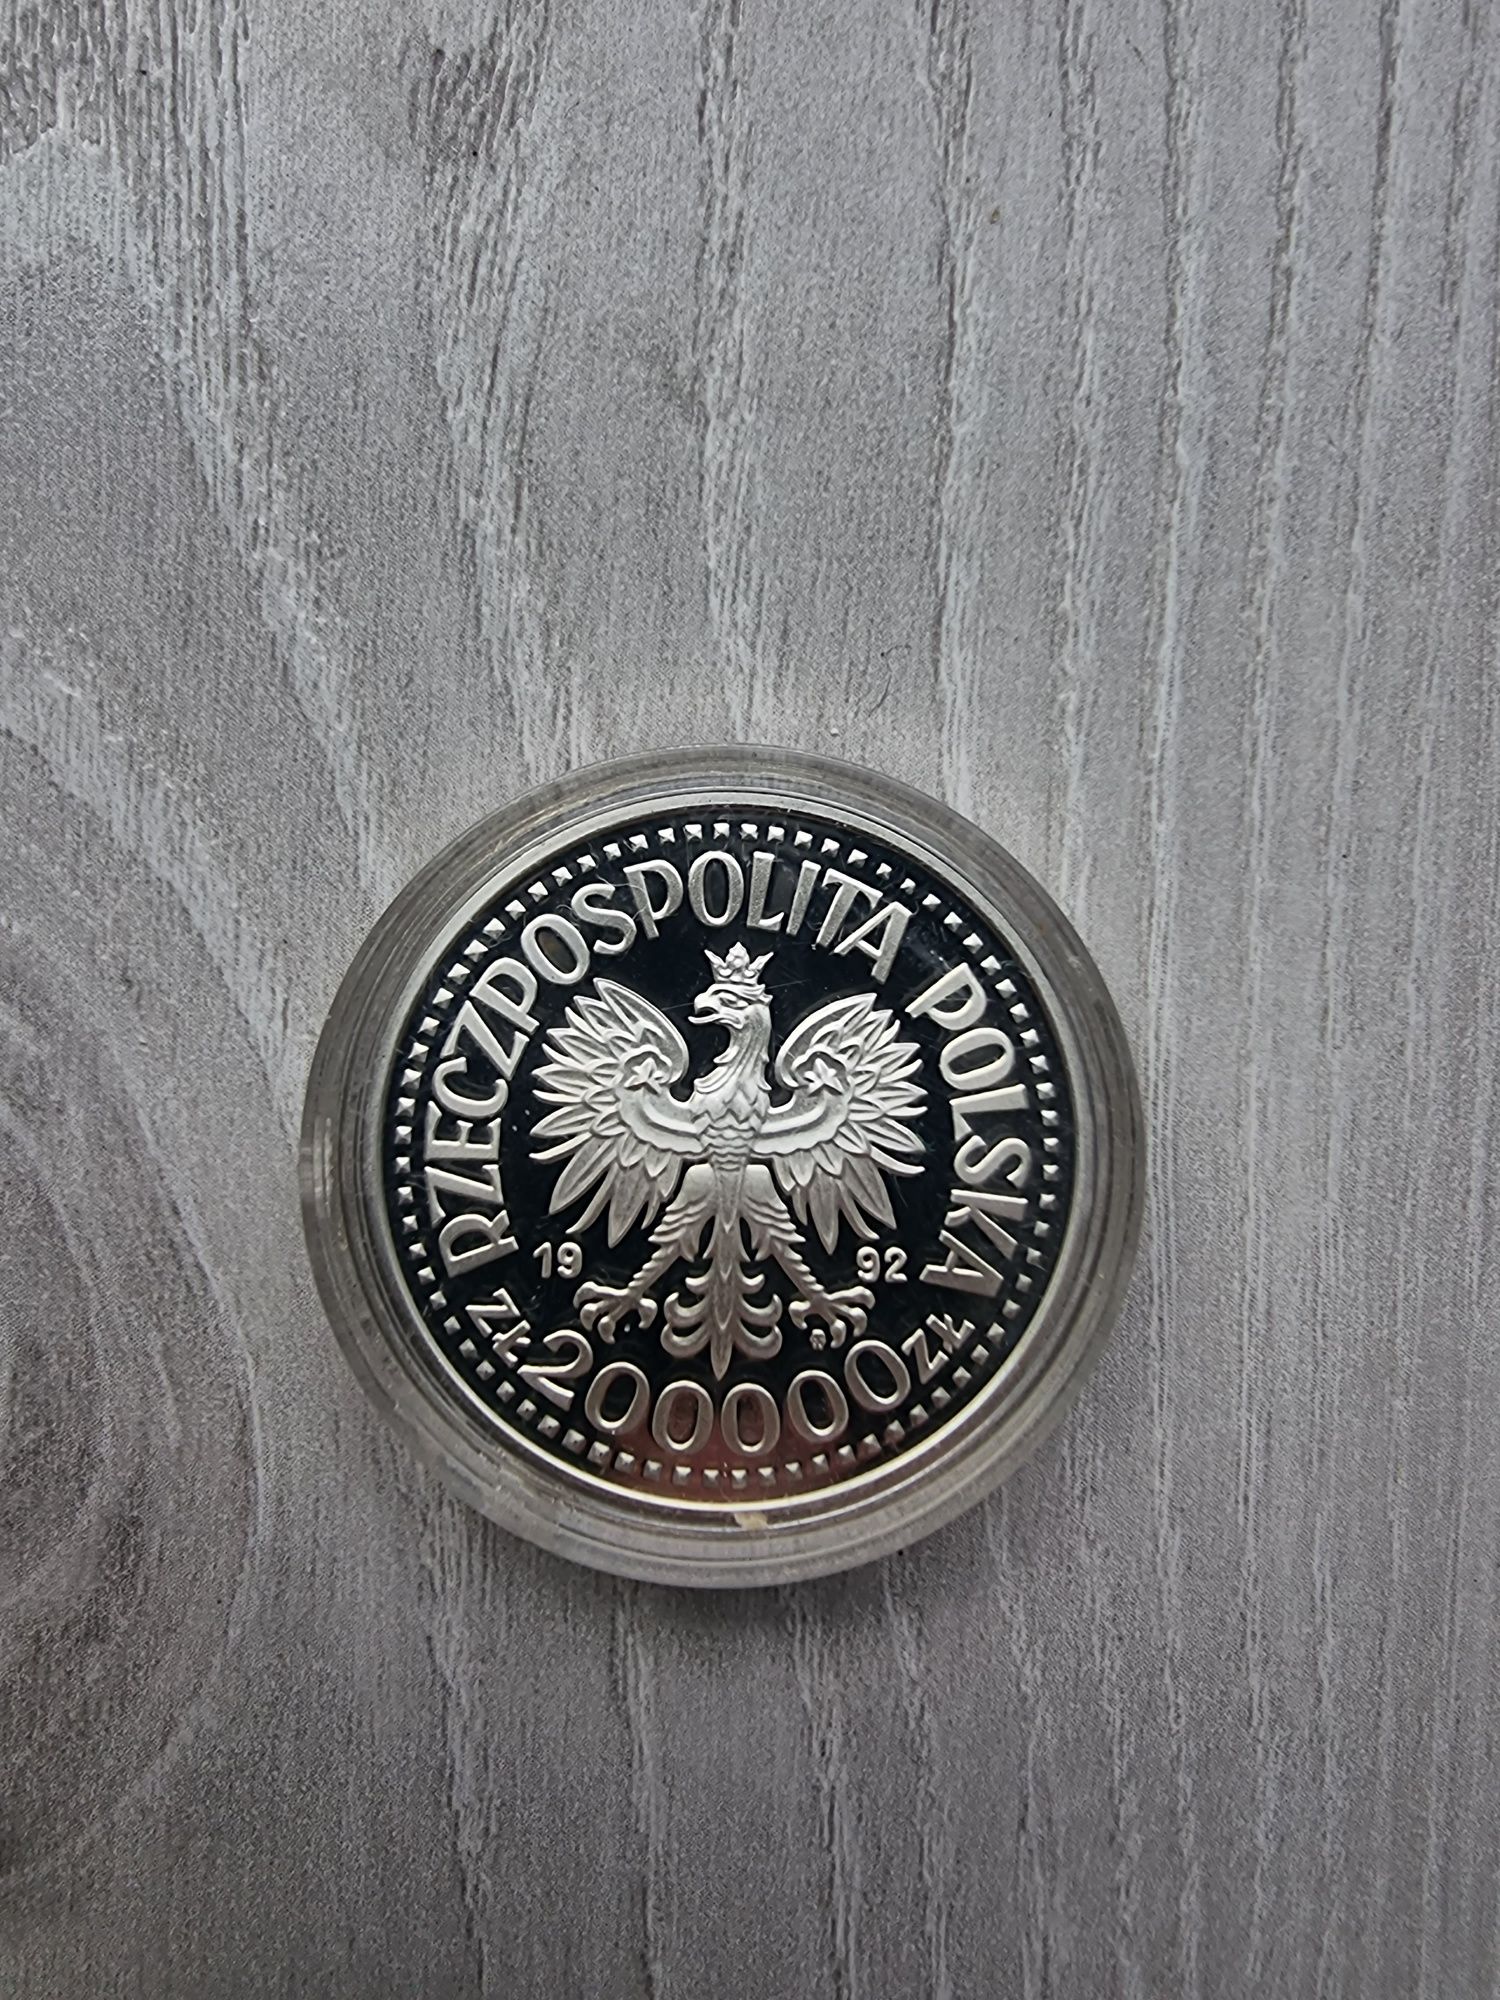 Srebrna moneta 10zł Staszic 200000 ideał 1992r